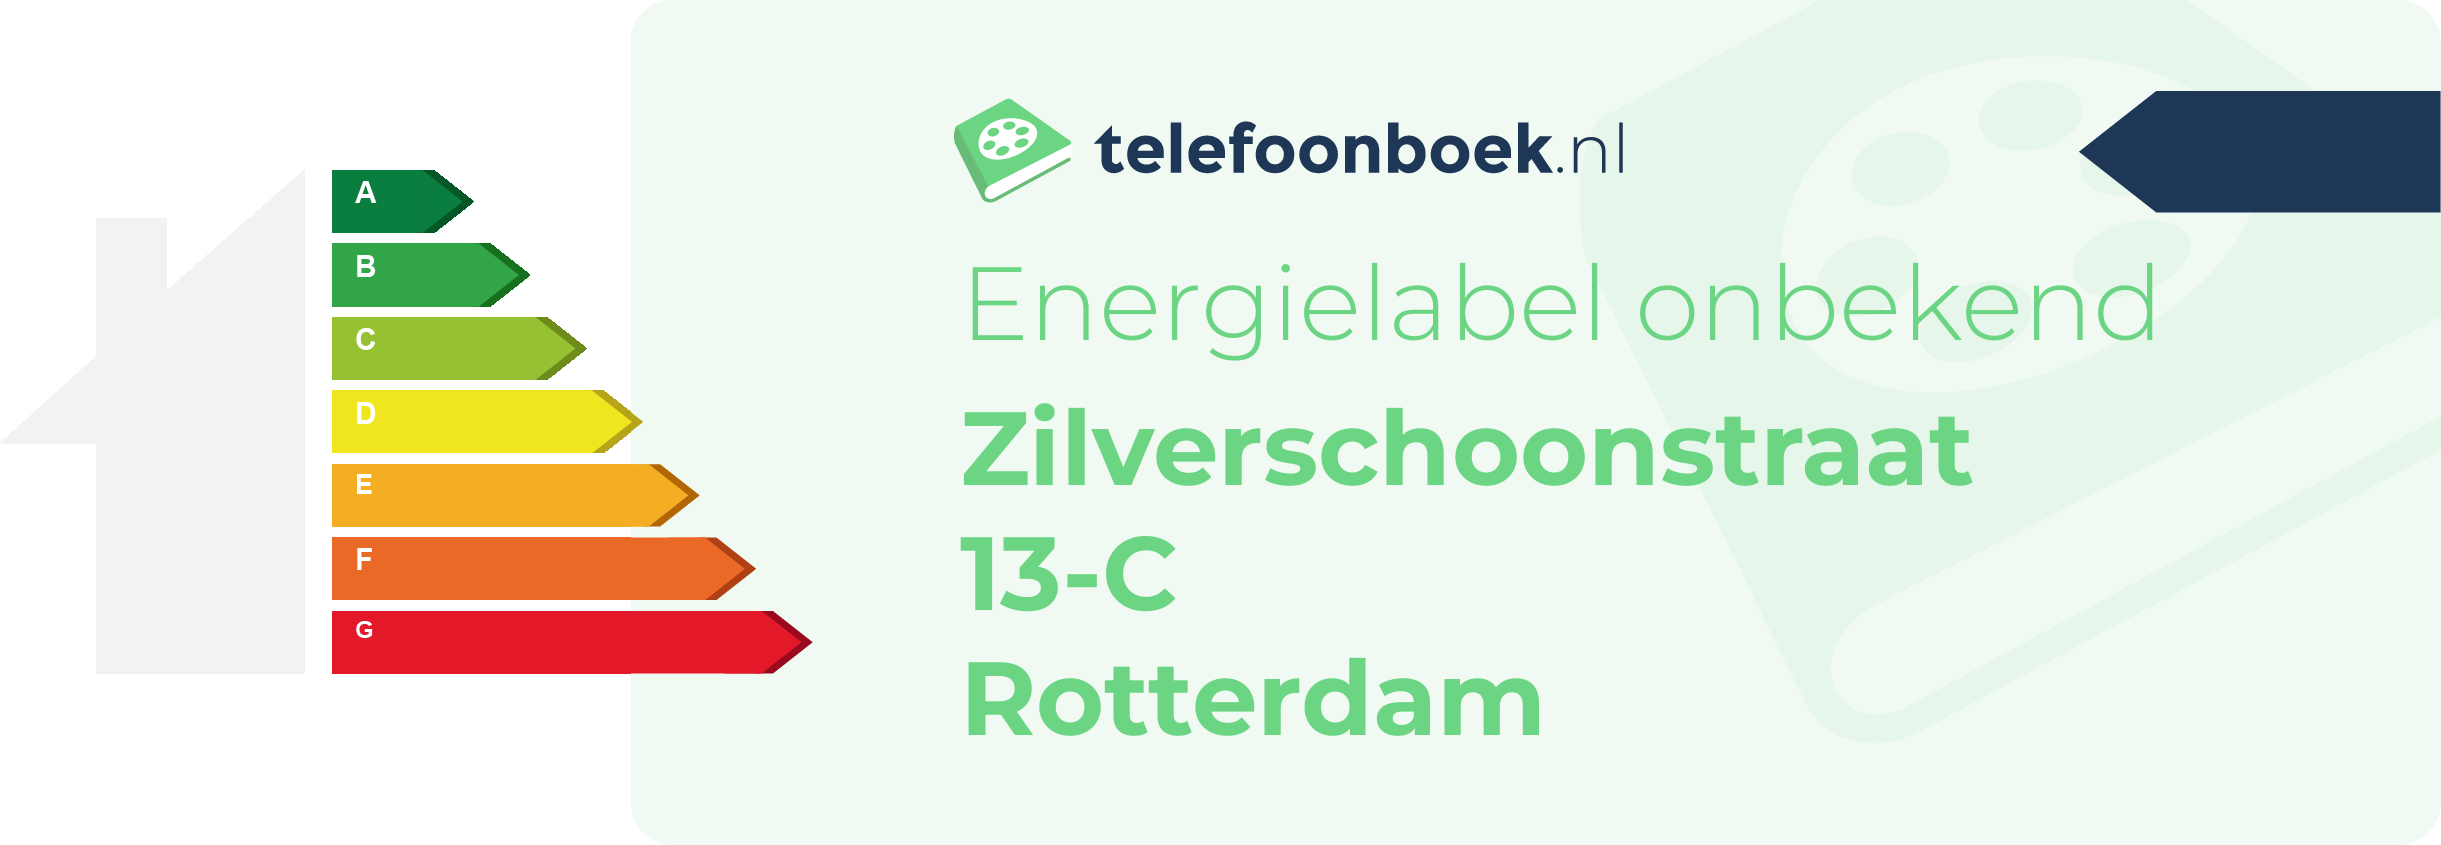 Energielabel Zilverschoonstraat 13-C Rotterdam